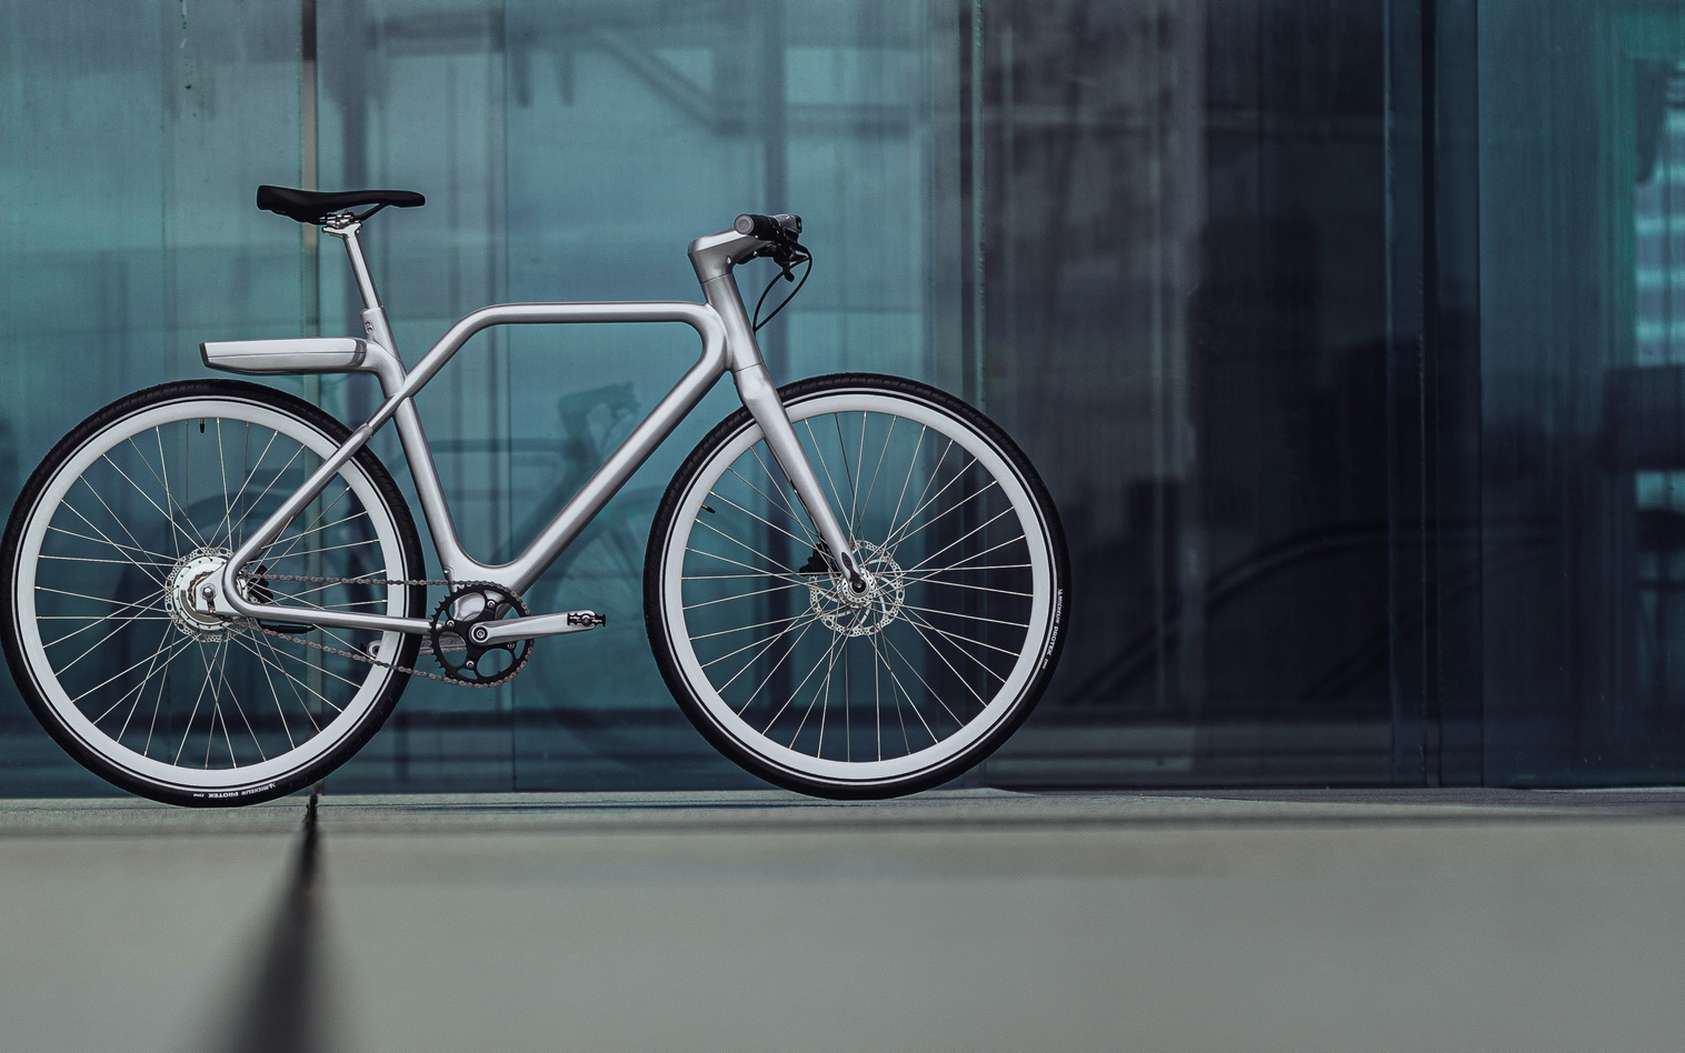 Le vélo à assistance électrique Angell revendique une conception inspirée d’Apple. © Angell